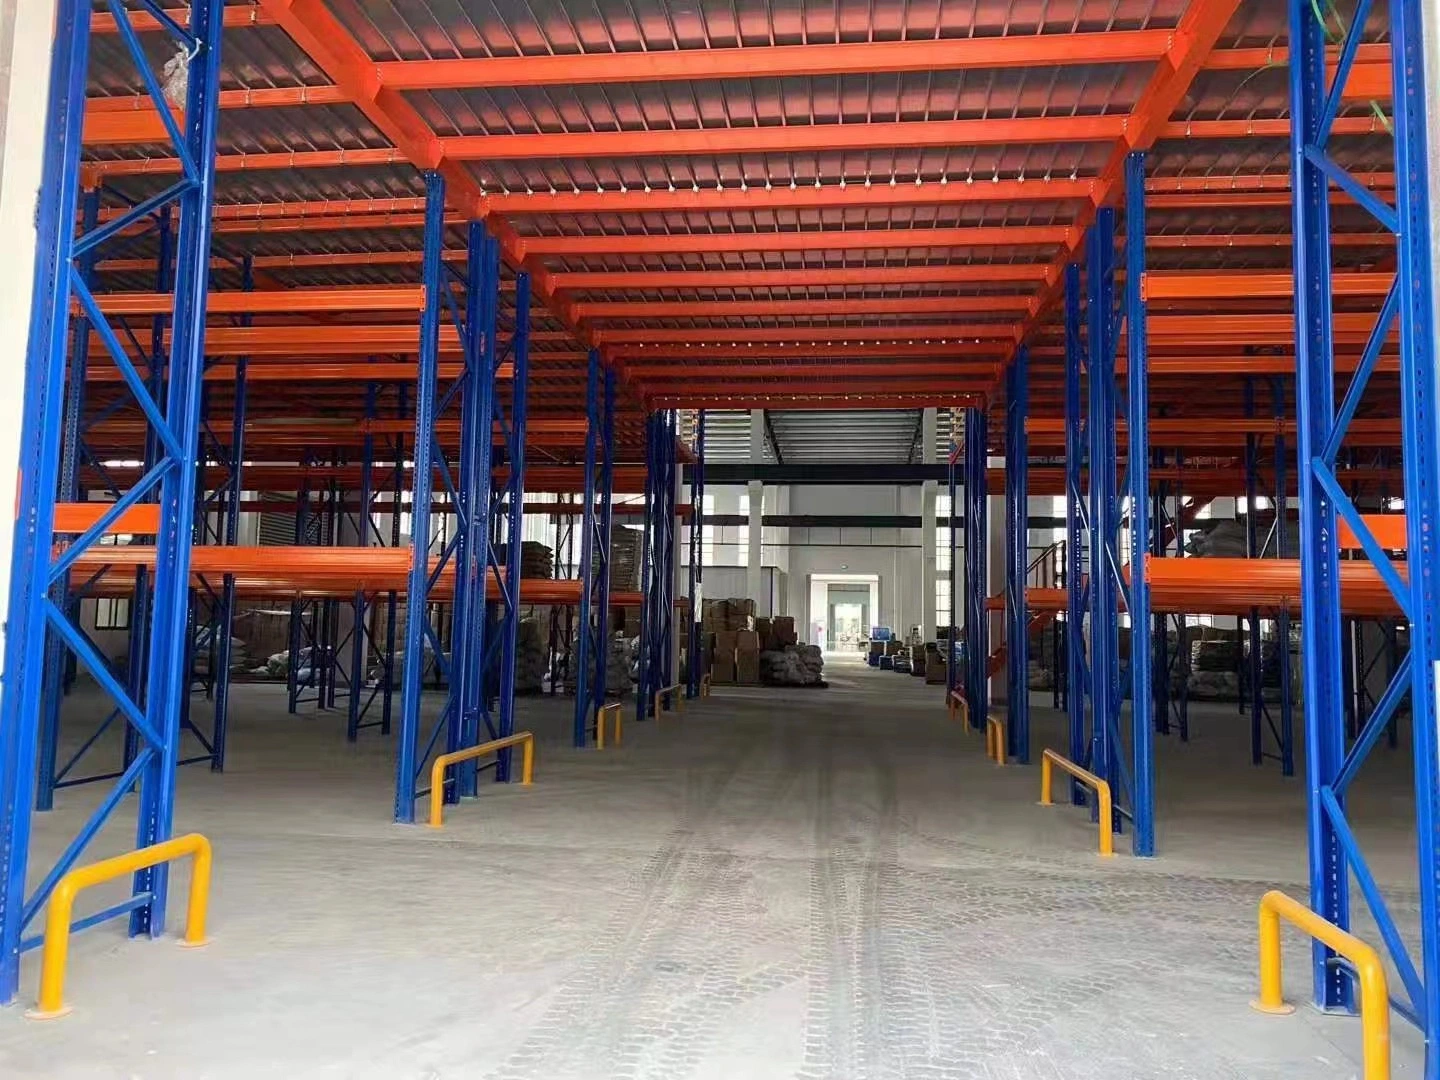 Steel Heavy Warehouse Storage Metal Metal Shelf Mezzanine Rack Structure Mezzanine with Stair